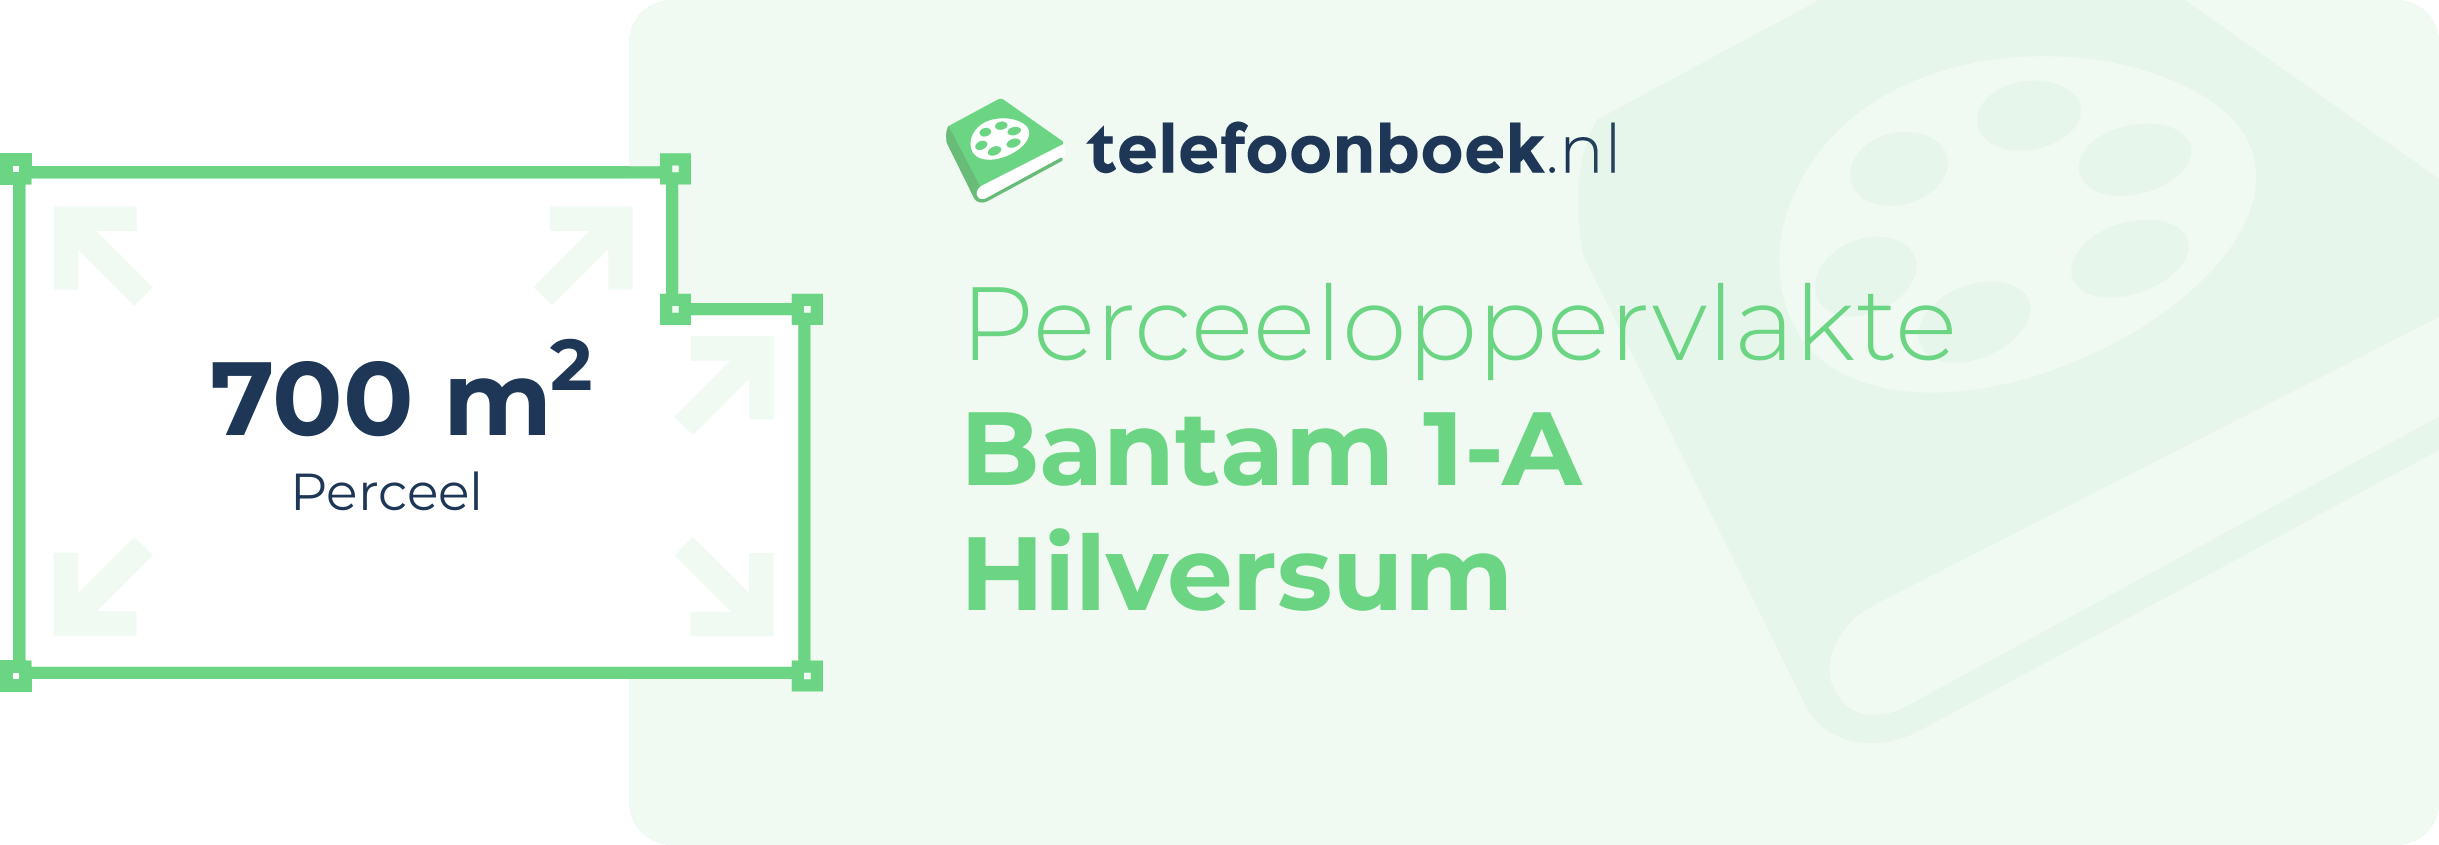 Perceeloppervlakte Bantam 1-A Hilversum